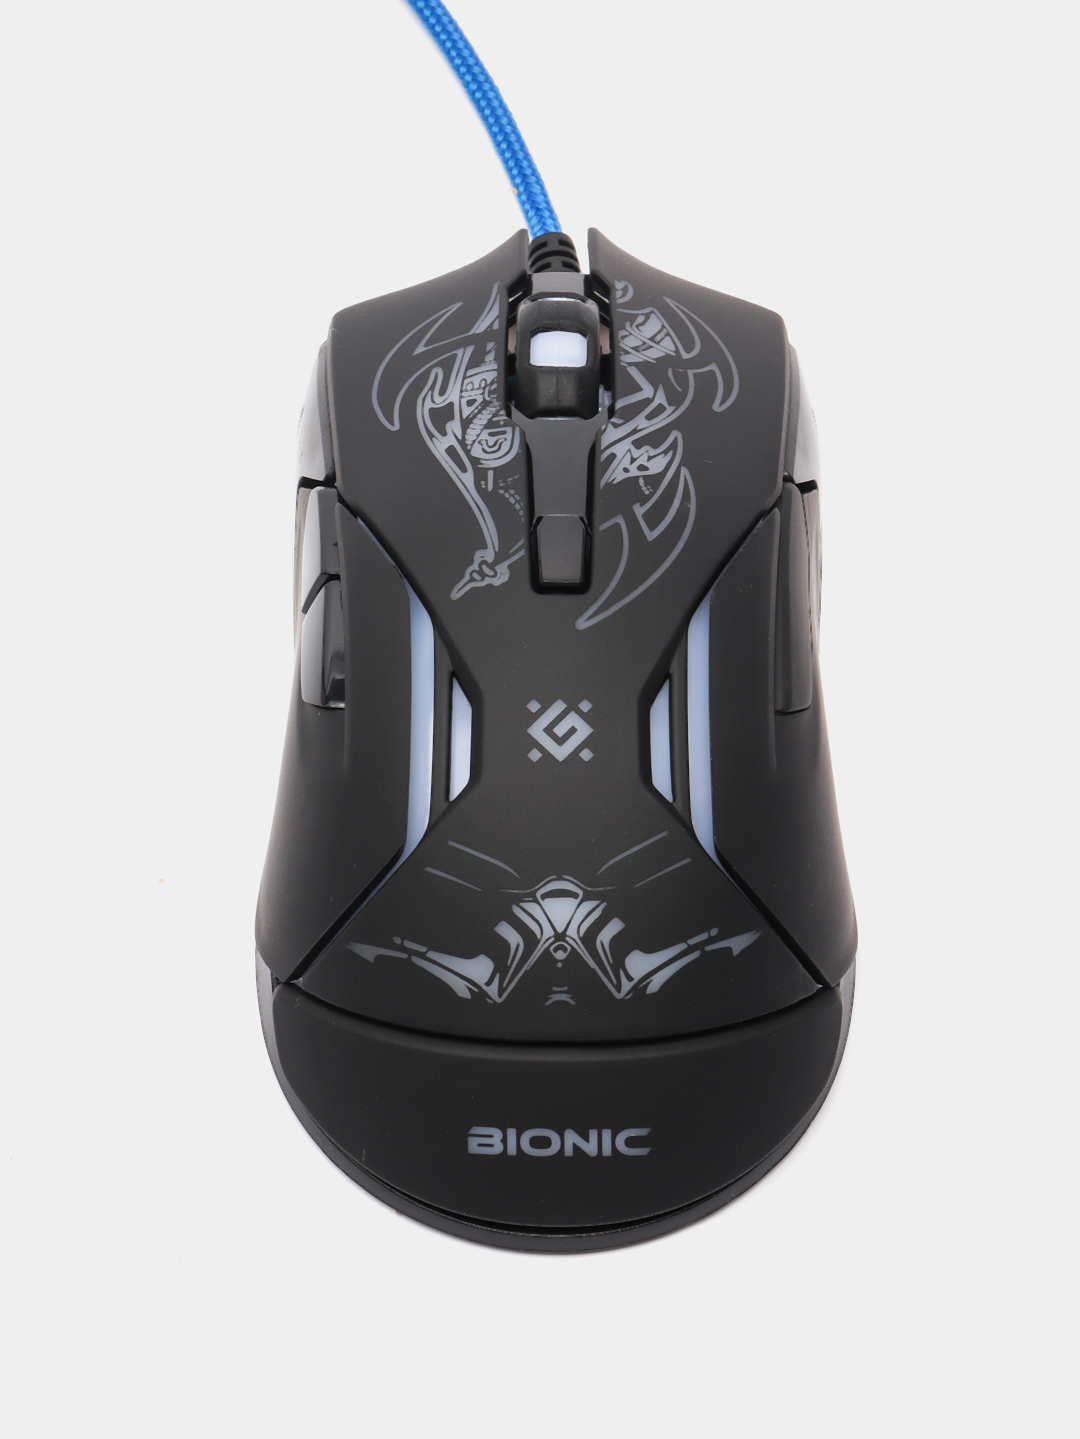 Подсветка мыши defender. Мышь Defender Bionic GM-250l. Проводная мышь Defender Skull GM-180l оптика,6кнопок,800-3200dpi игровая 1,5m, USB. Defender мышь игровая Bionic GM-250l 6кн. 3200dpi + коврик. Игровая мышка Дефендер с подсветкой.